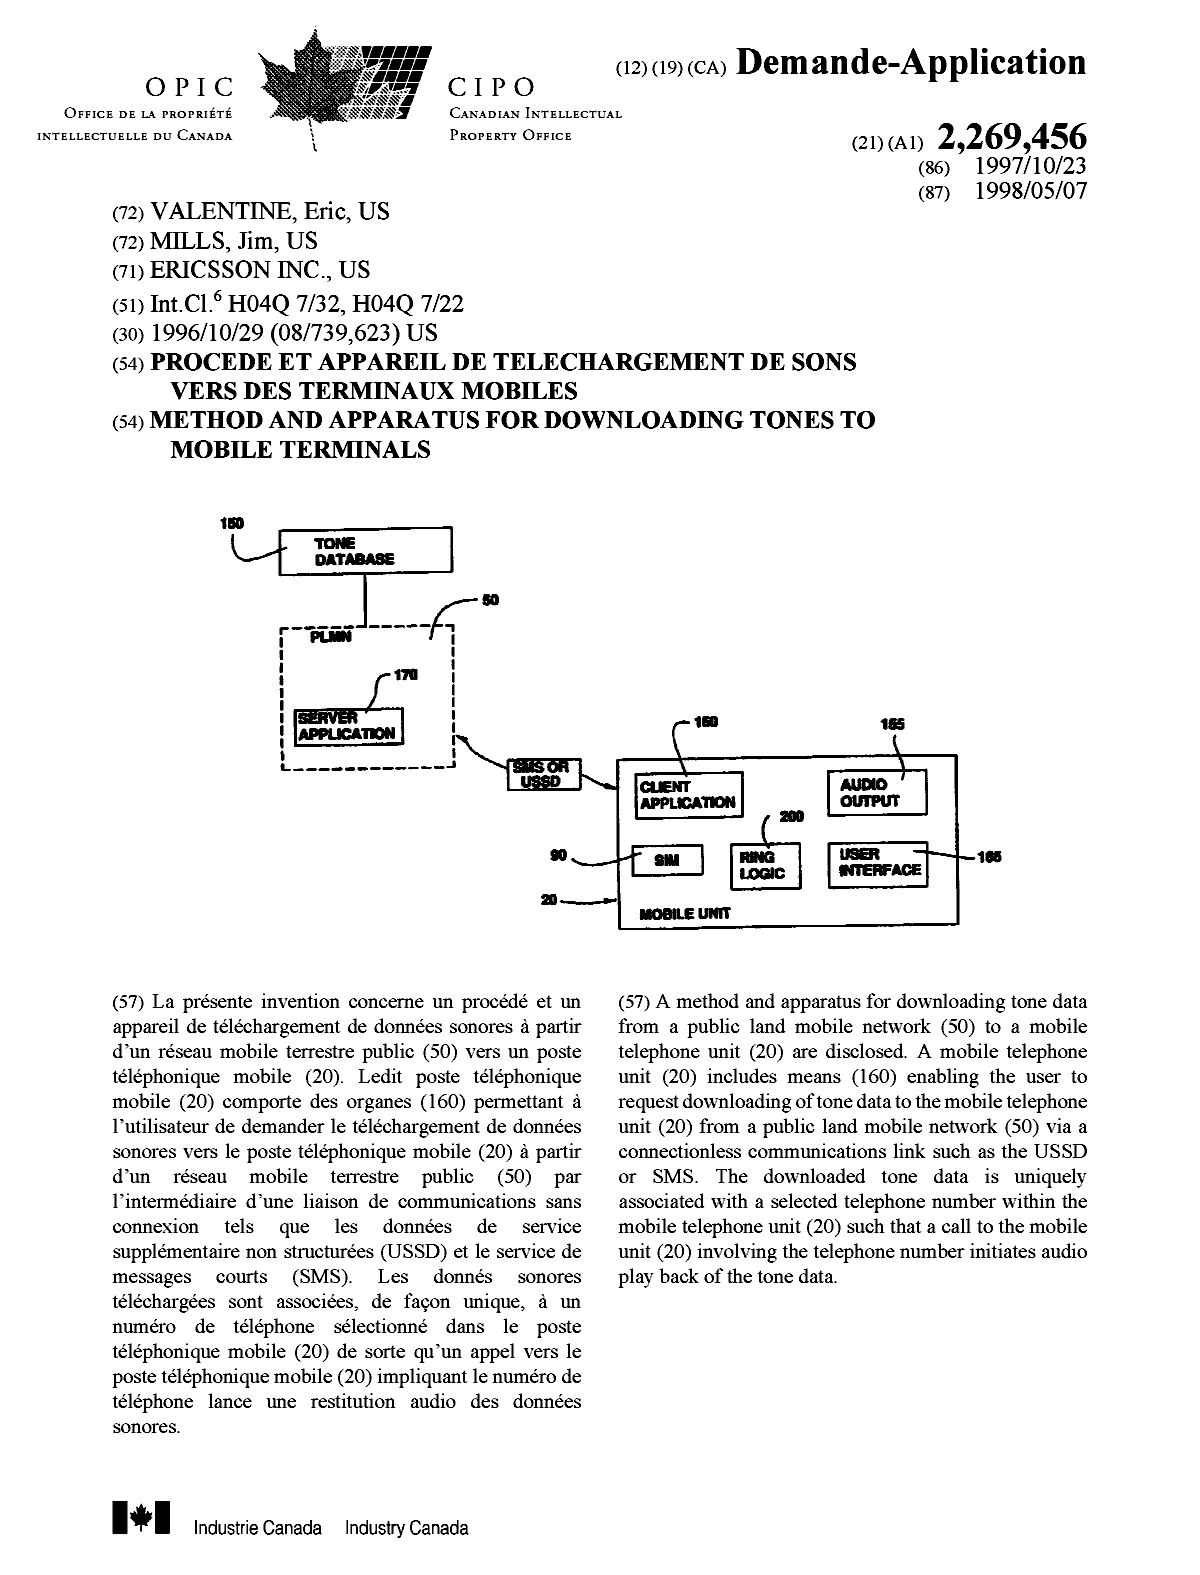 Document de brevet canadien 2269456. Page couverture 19990614. Image 1 de 1